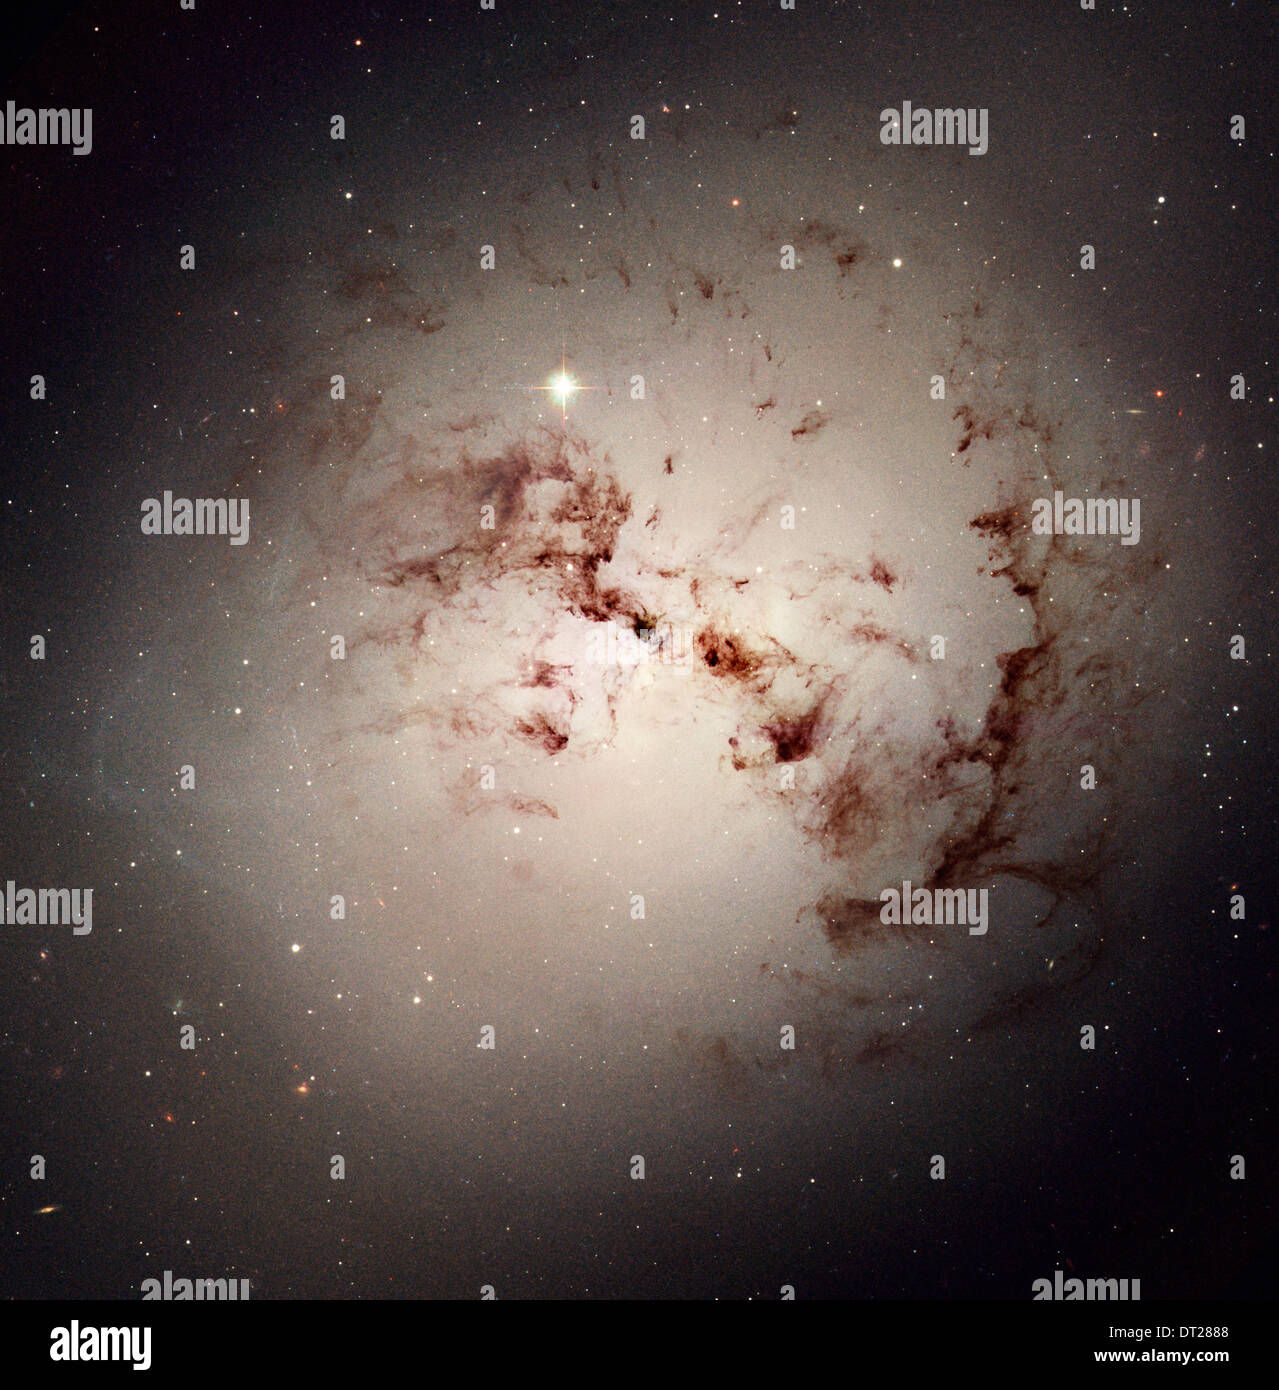 Loops und Blobs von kosmischem Staub liegen versteckt in die elliptische Riesengalaxie NGC 1316 durch das Hubble Space Telescope der NASA aufgenommen. Stockfoto